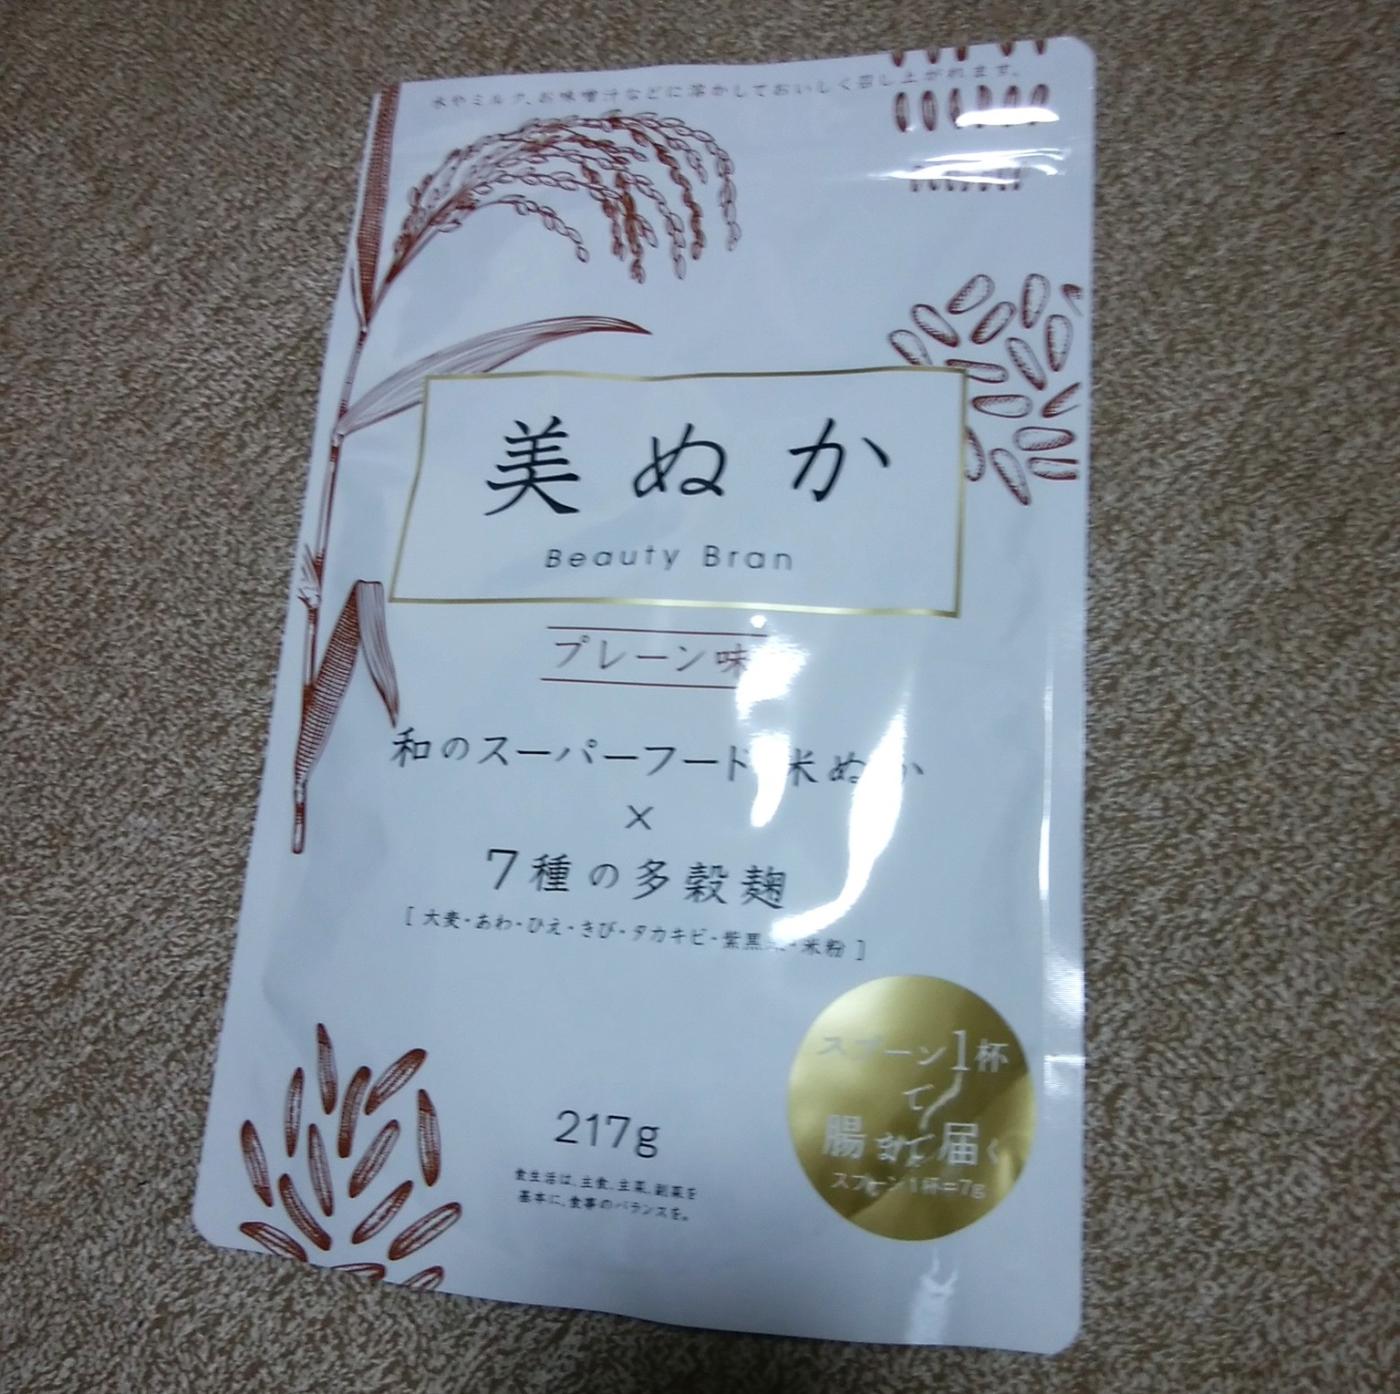 米ぬか いや 美ぬか は日本古来のスーパーフード うららか堂プロモーションページ 提供コエタス